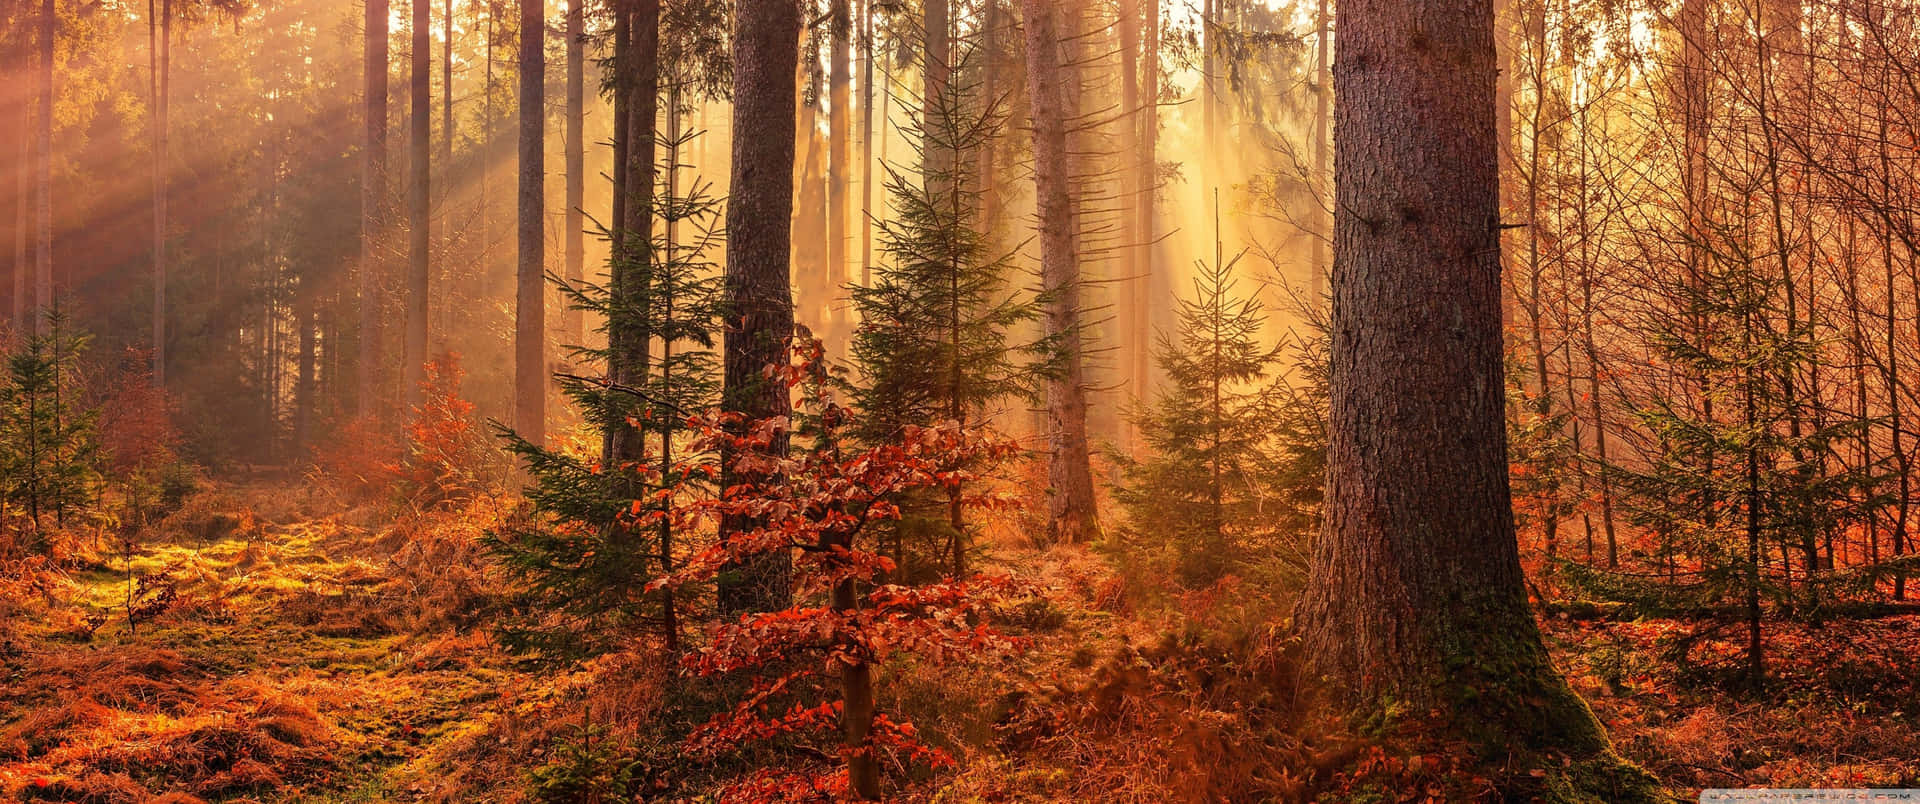 Einwunderschöner Herbsttag Im Wald Wallpaper